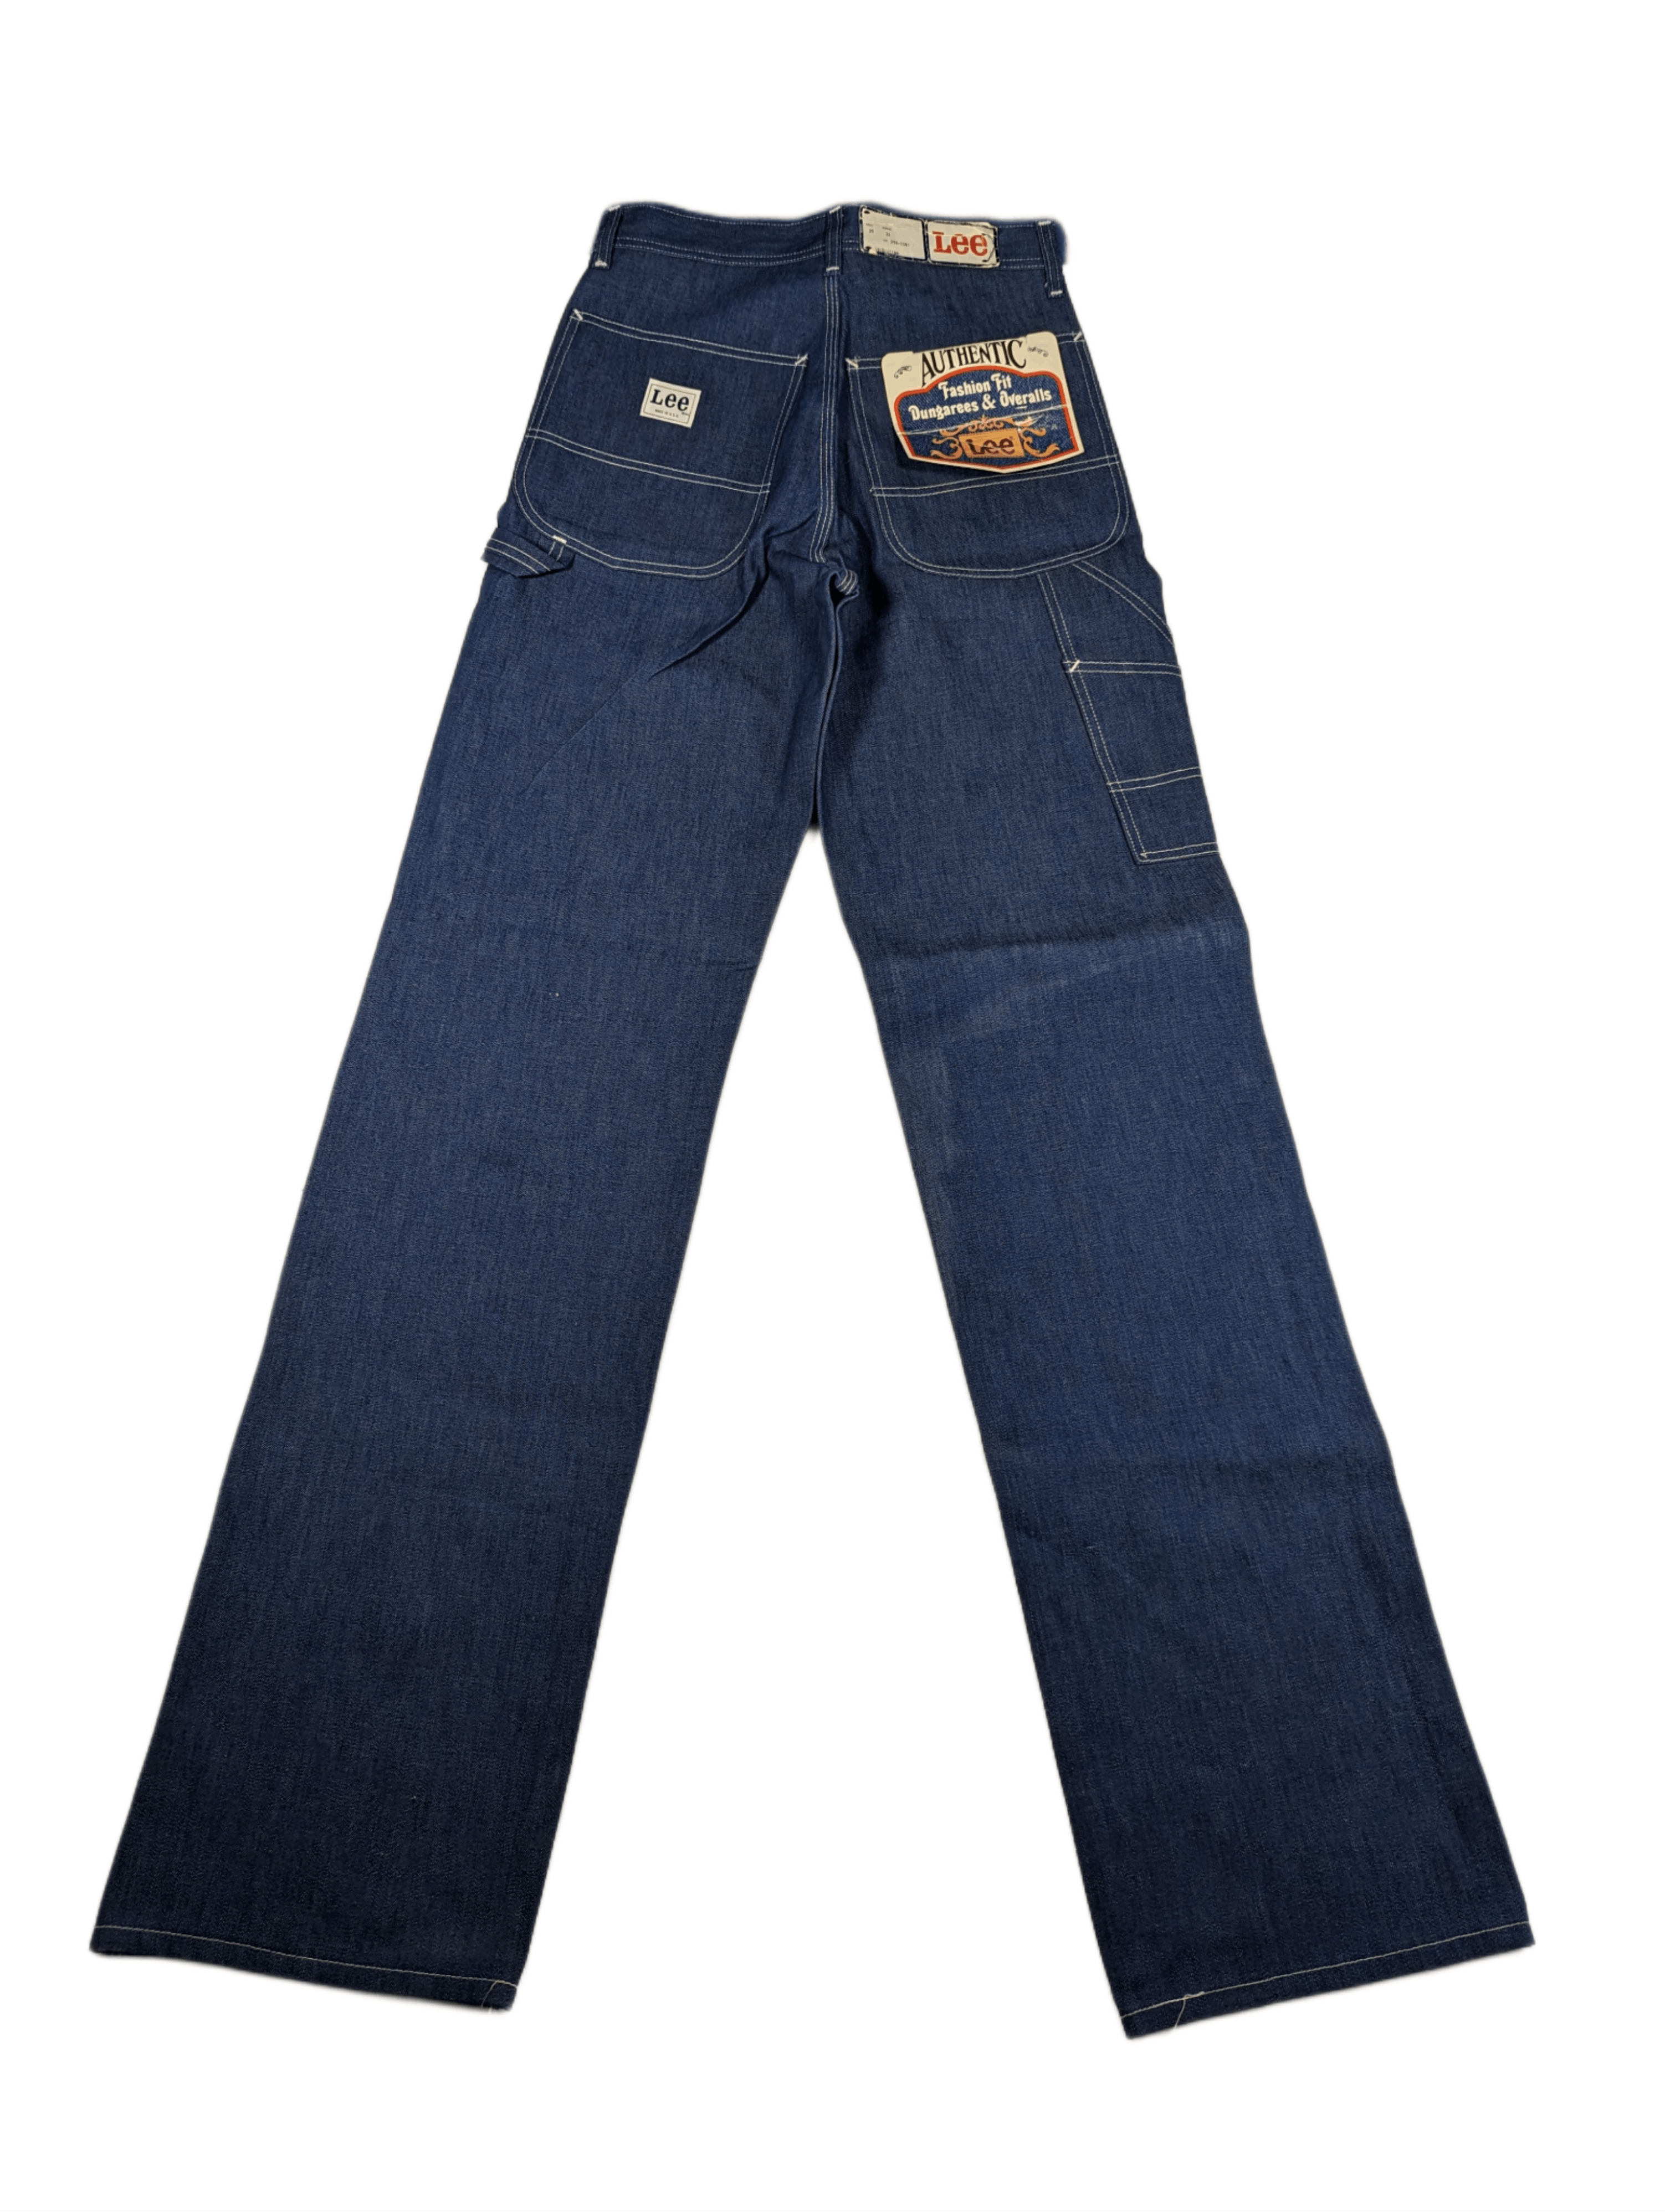 Worker - Baggy Carpenter Jeans for Men